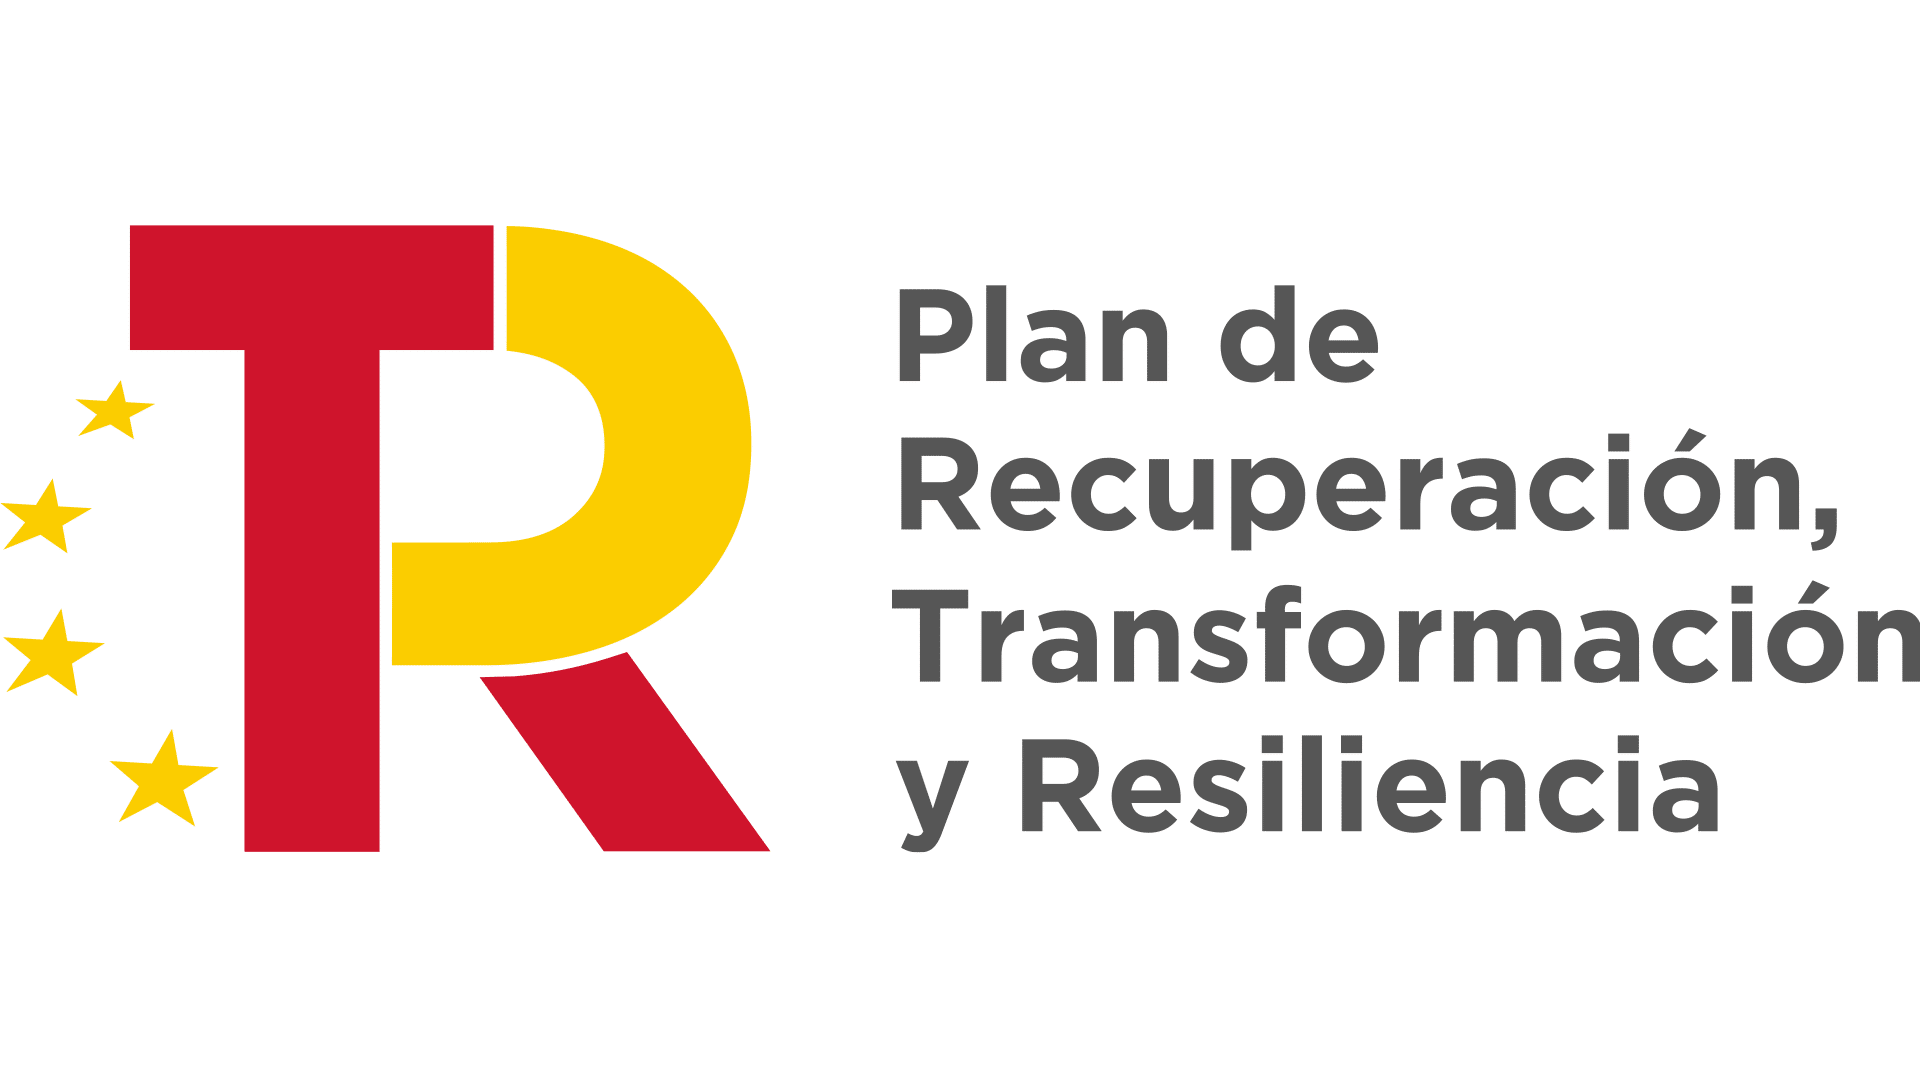 Plan de Recuperacion, Transformacion y resiliencia